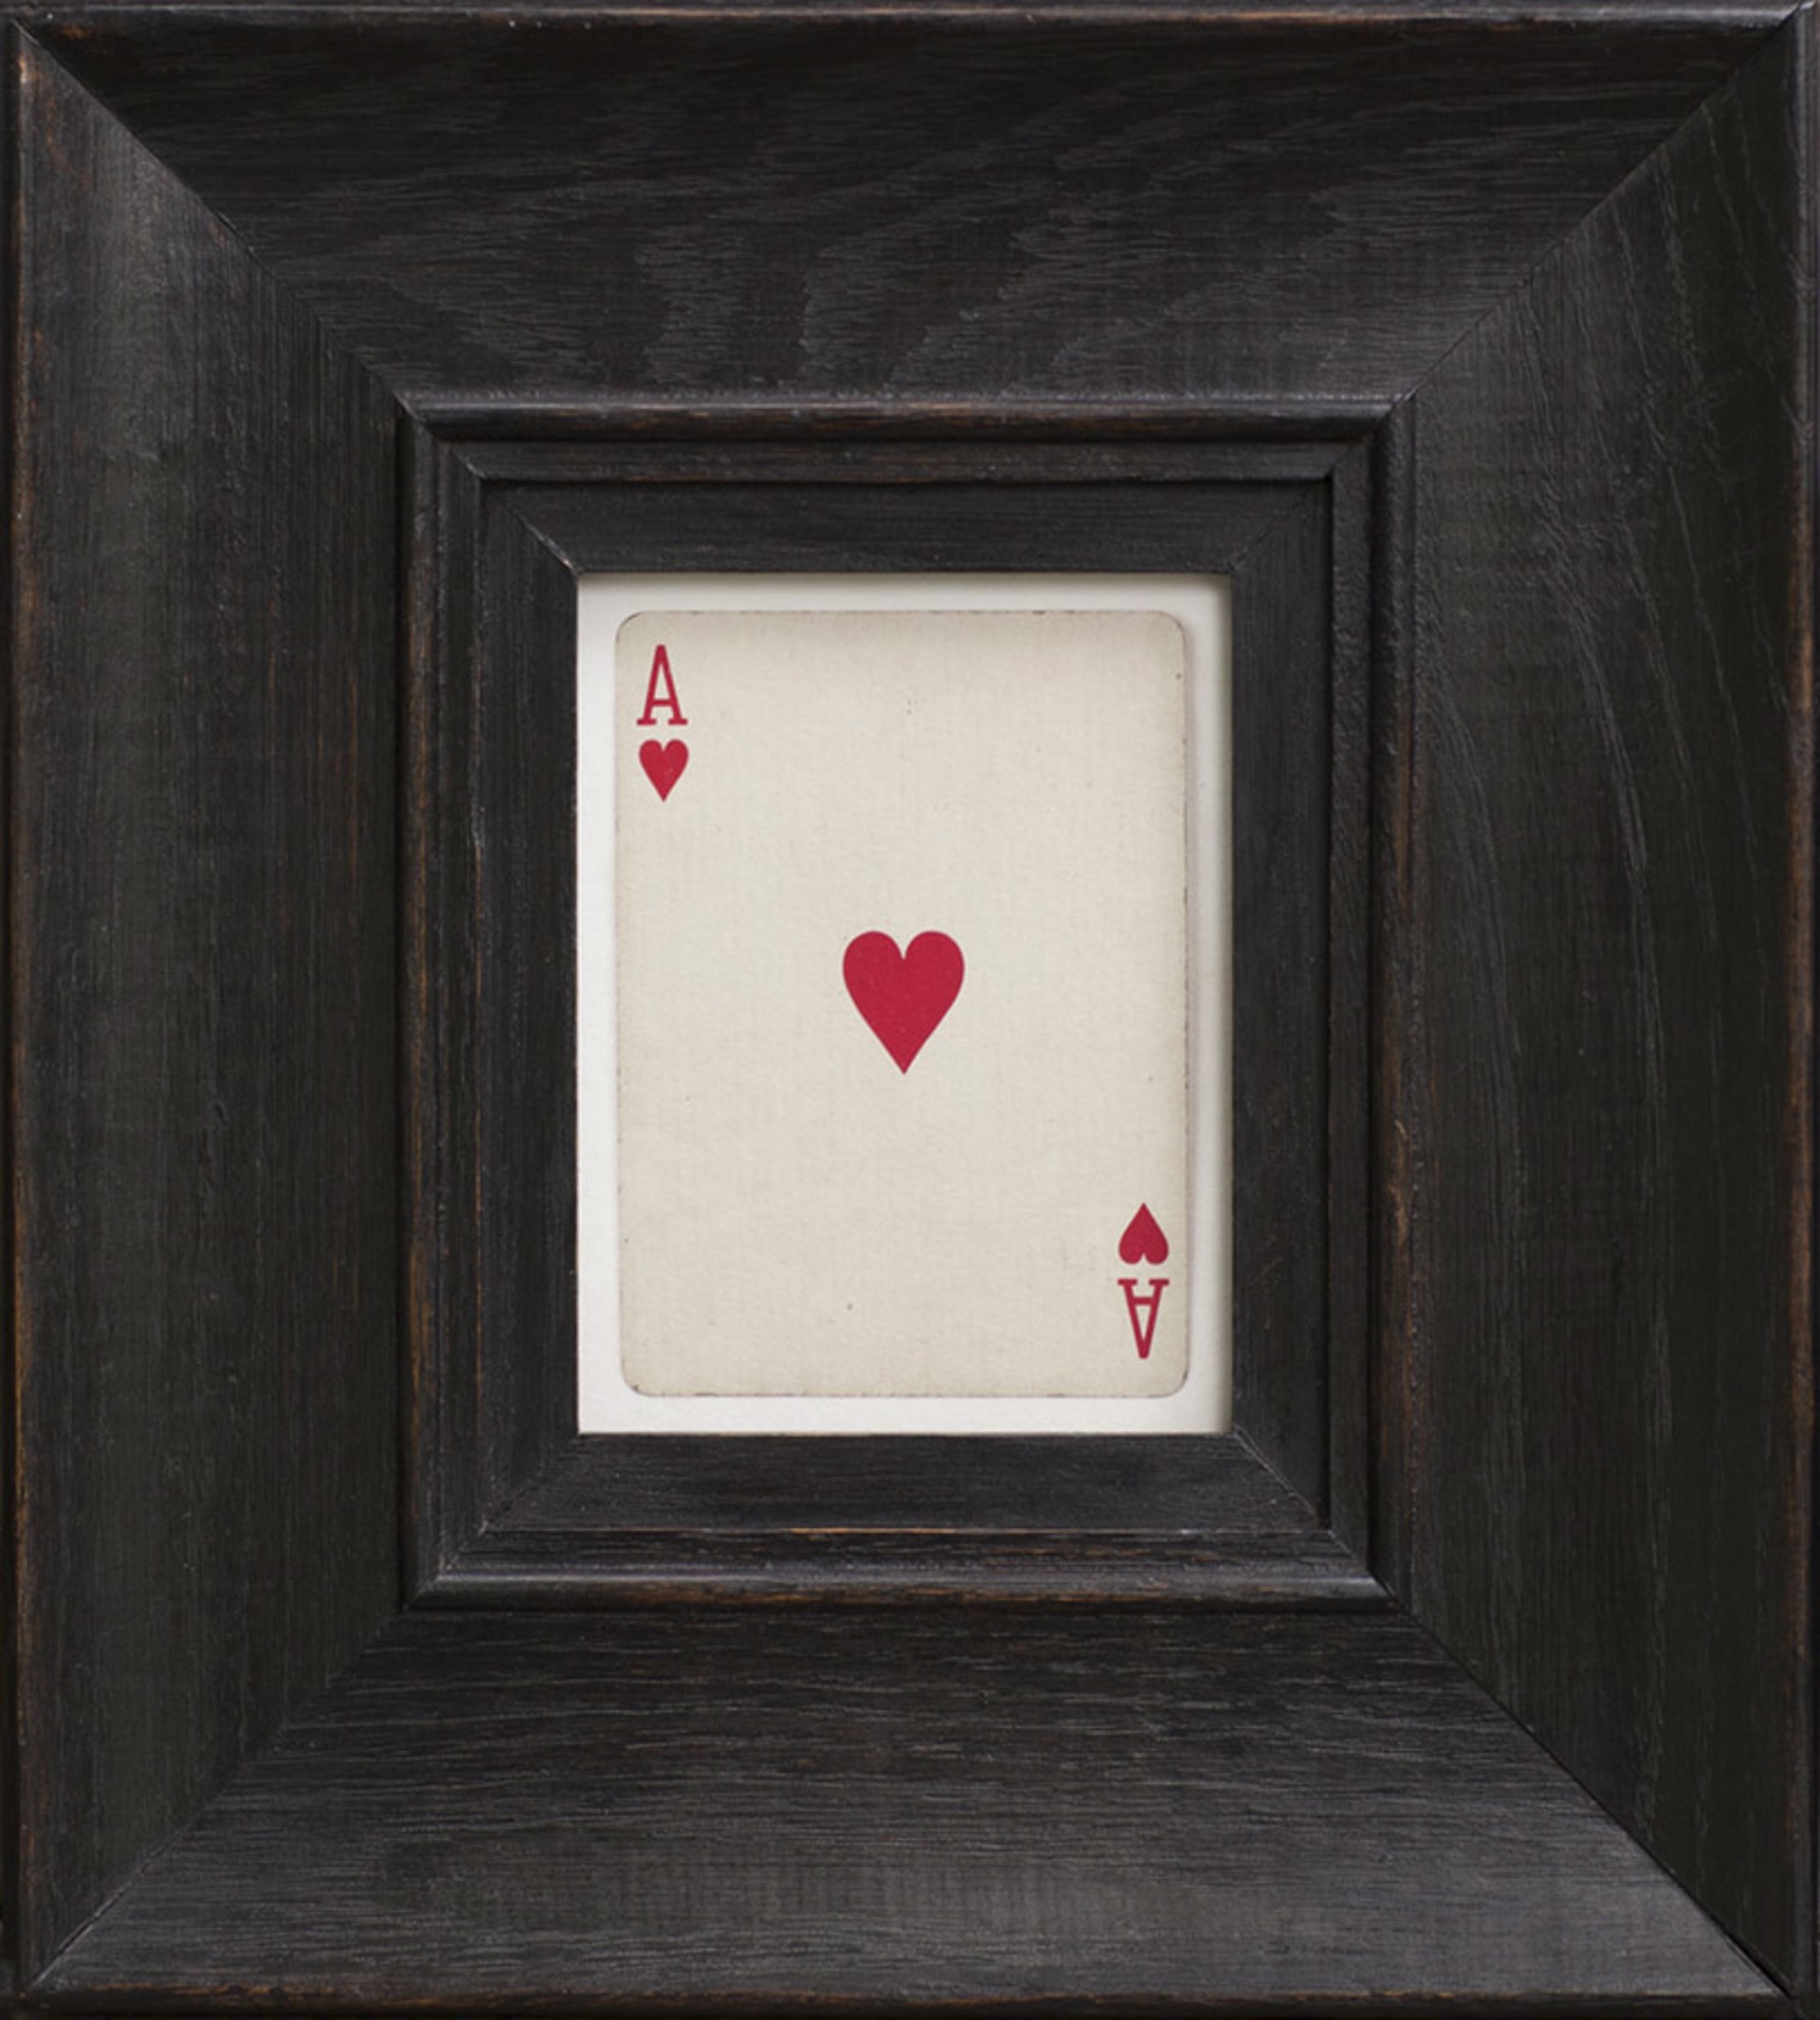 Ace of Hearts by Jefferson Hayman